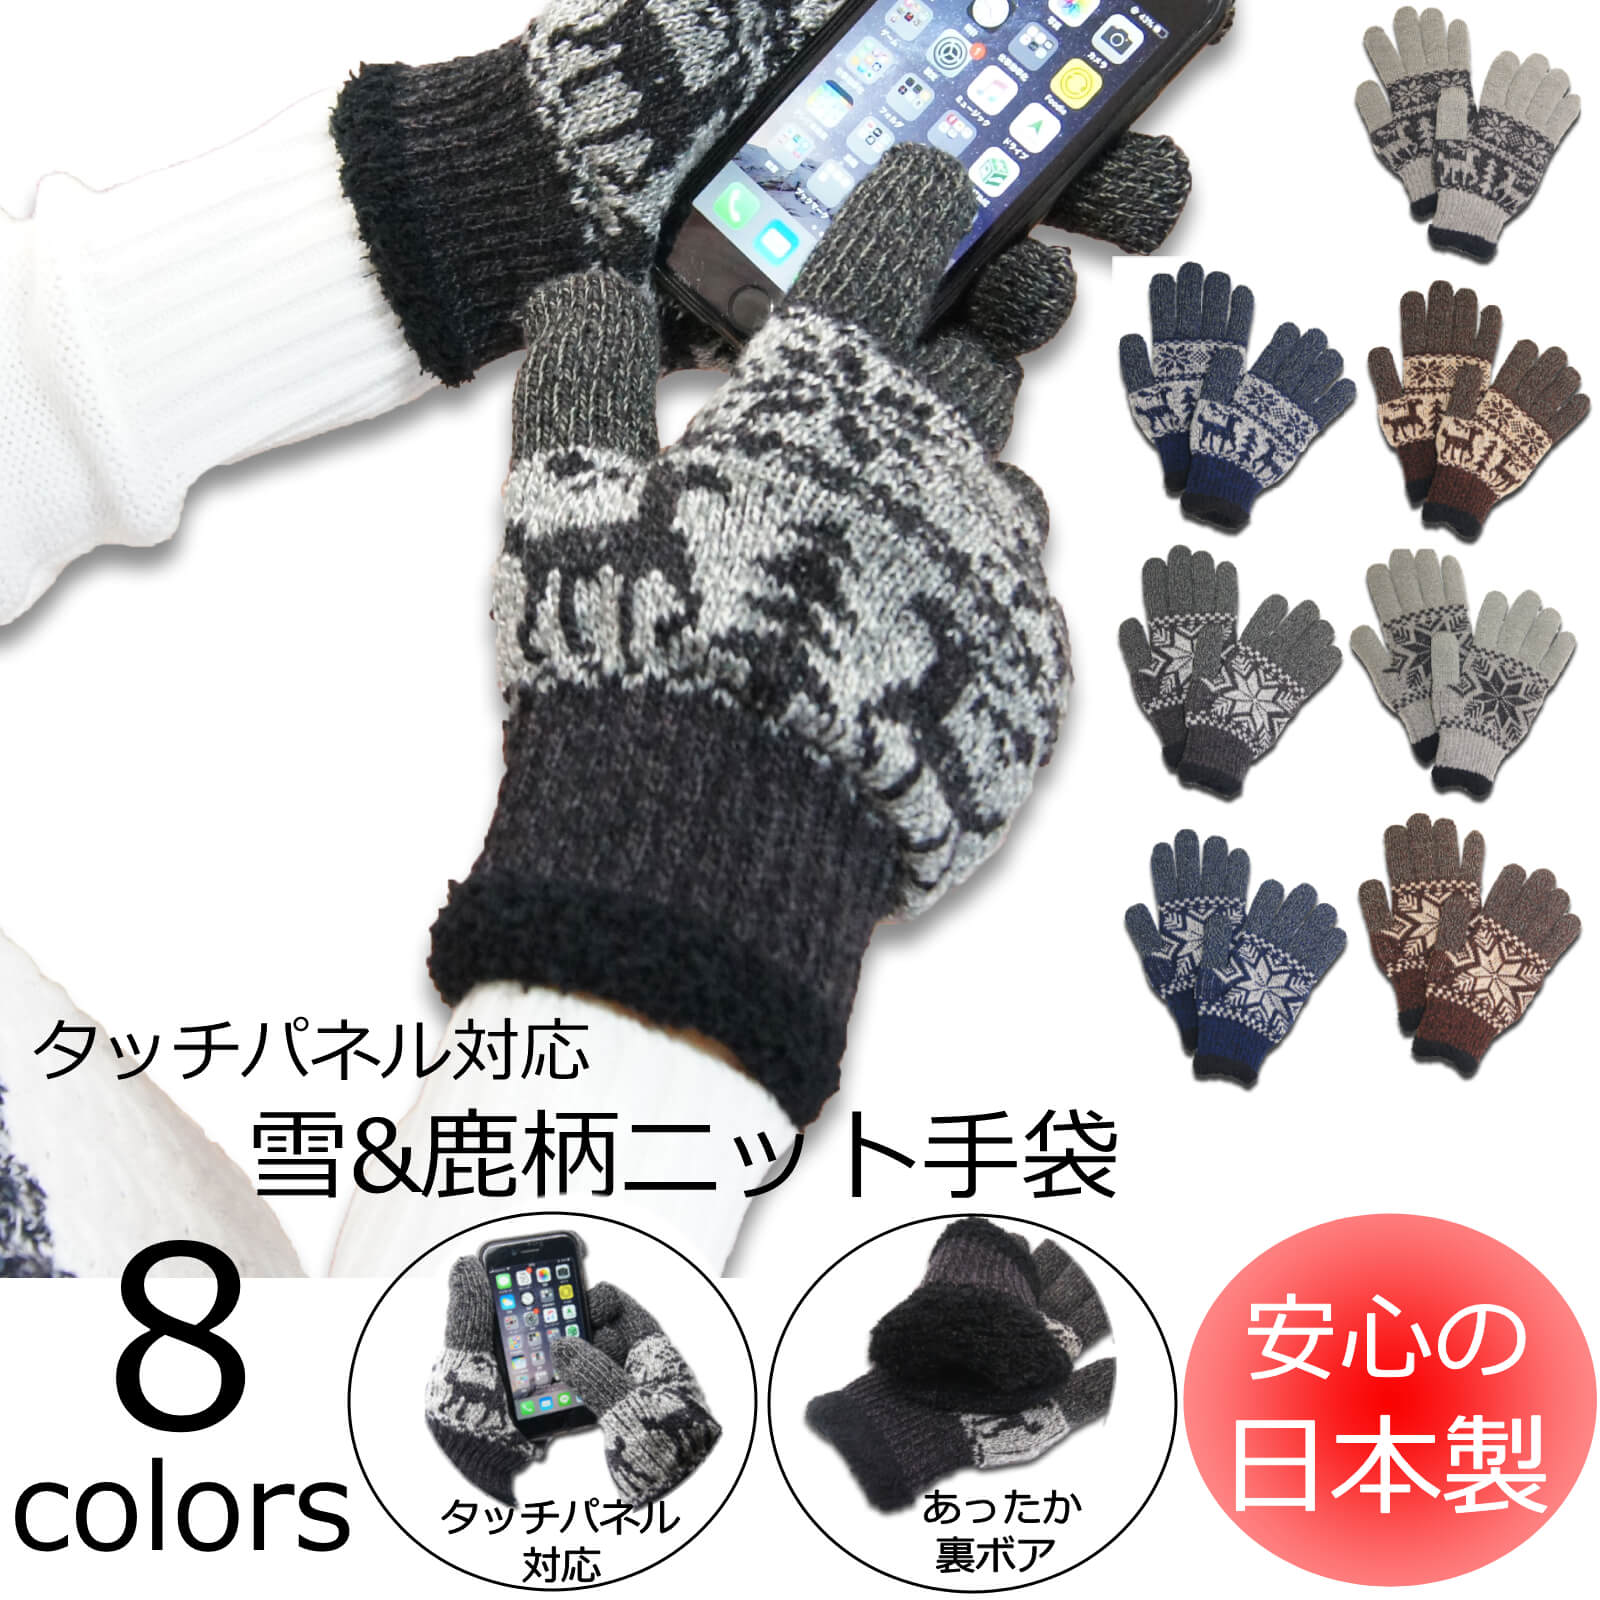 【日本製】雪鹿柄ニット手袋 タッチパネル対応!(全8色展開) 2790-2794 メンズ レディース あったかグローブ